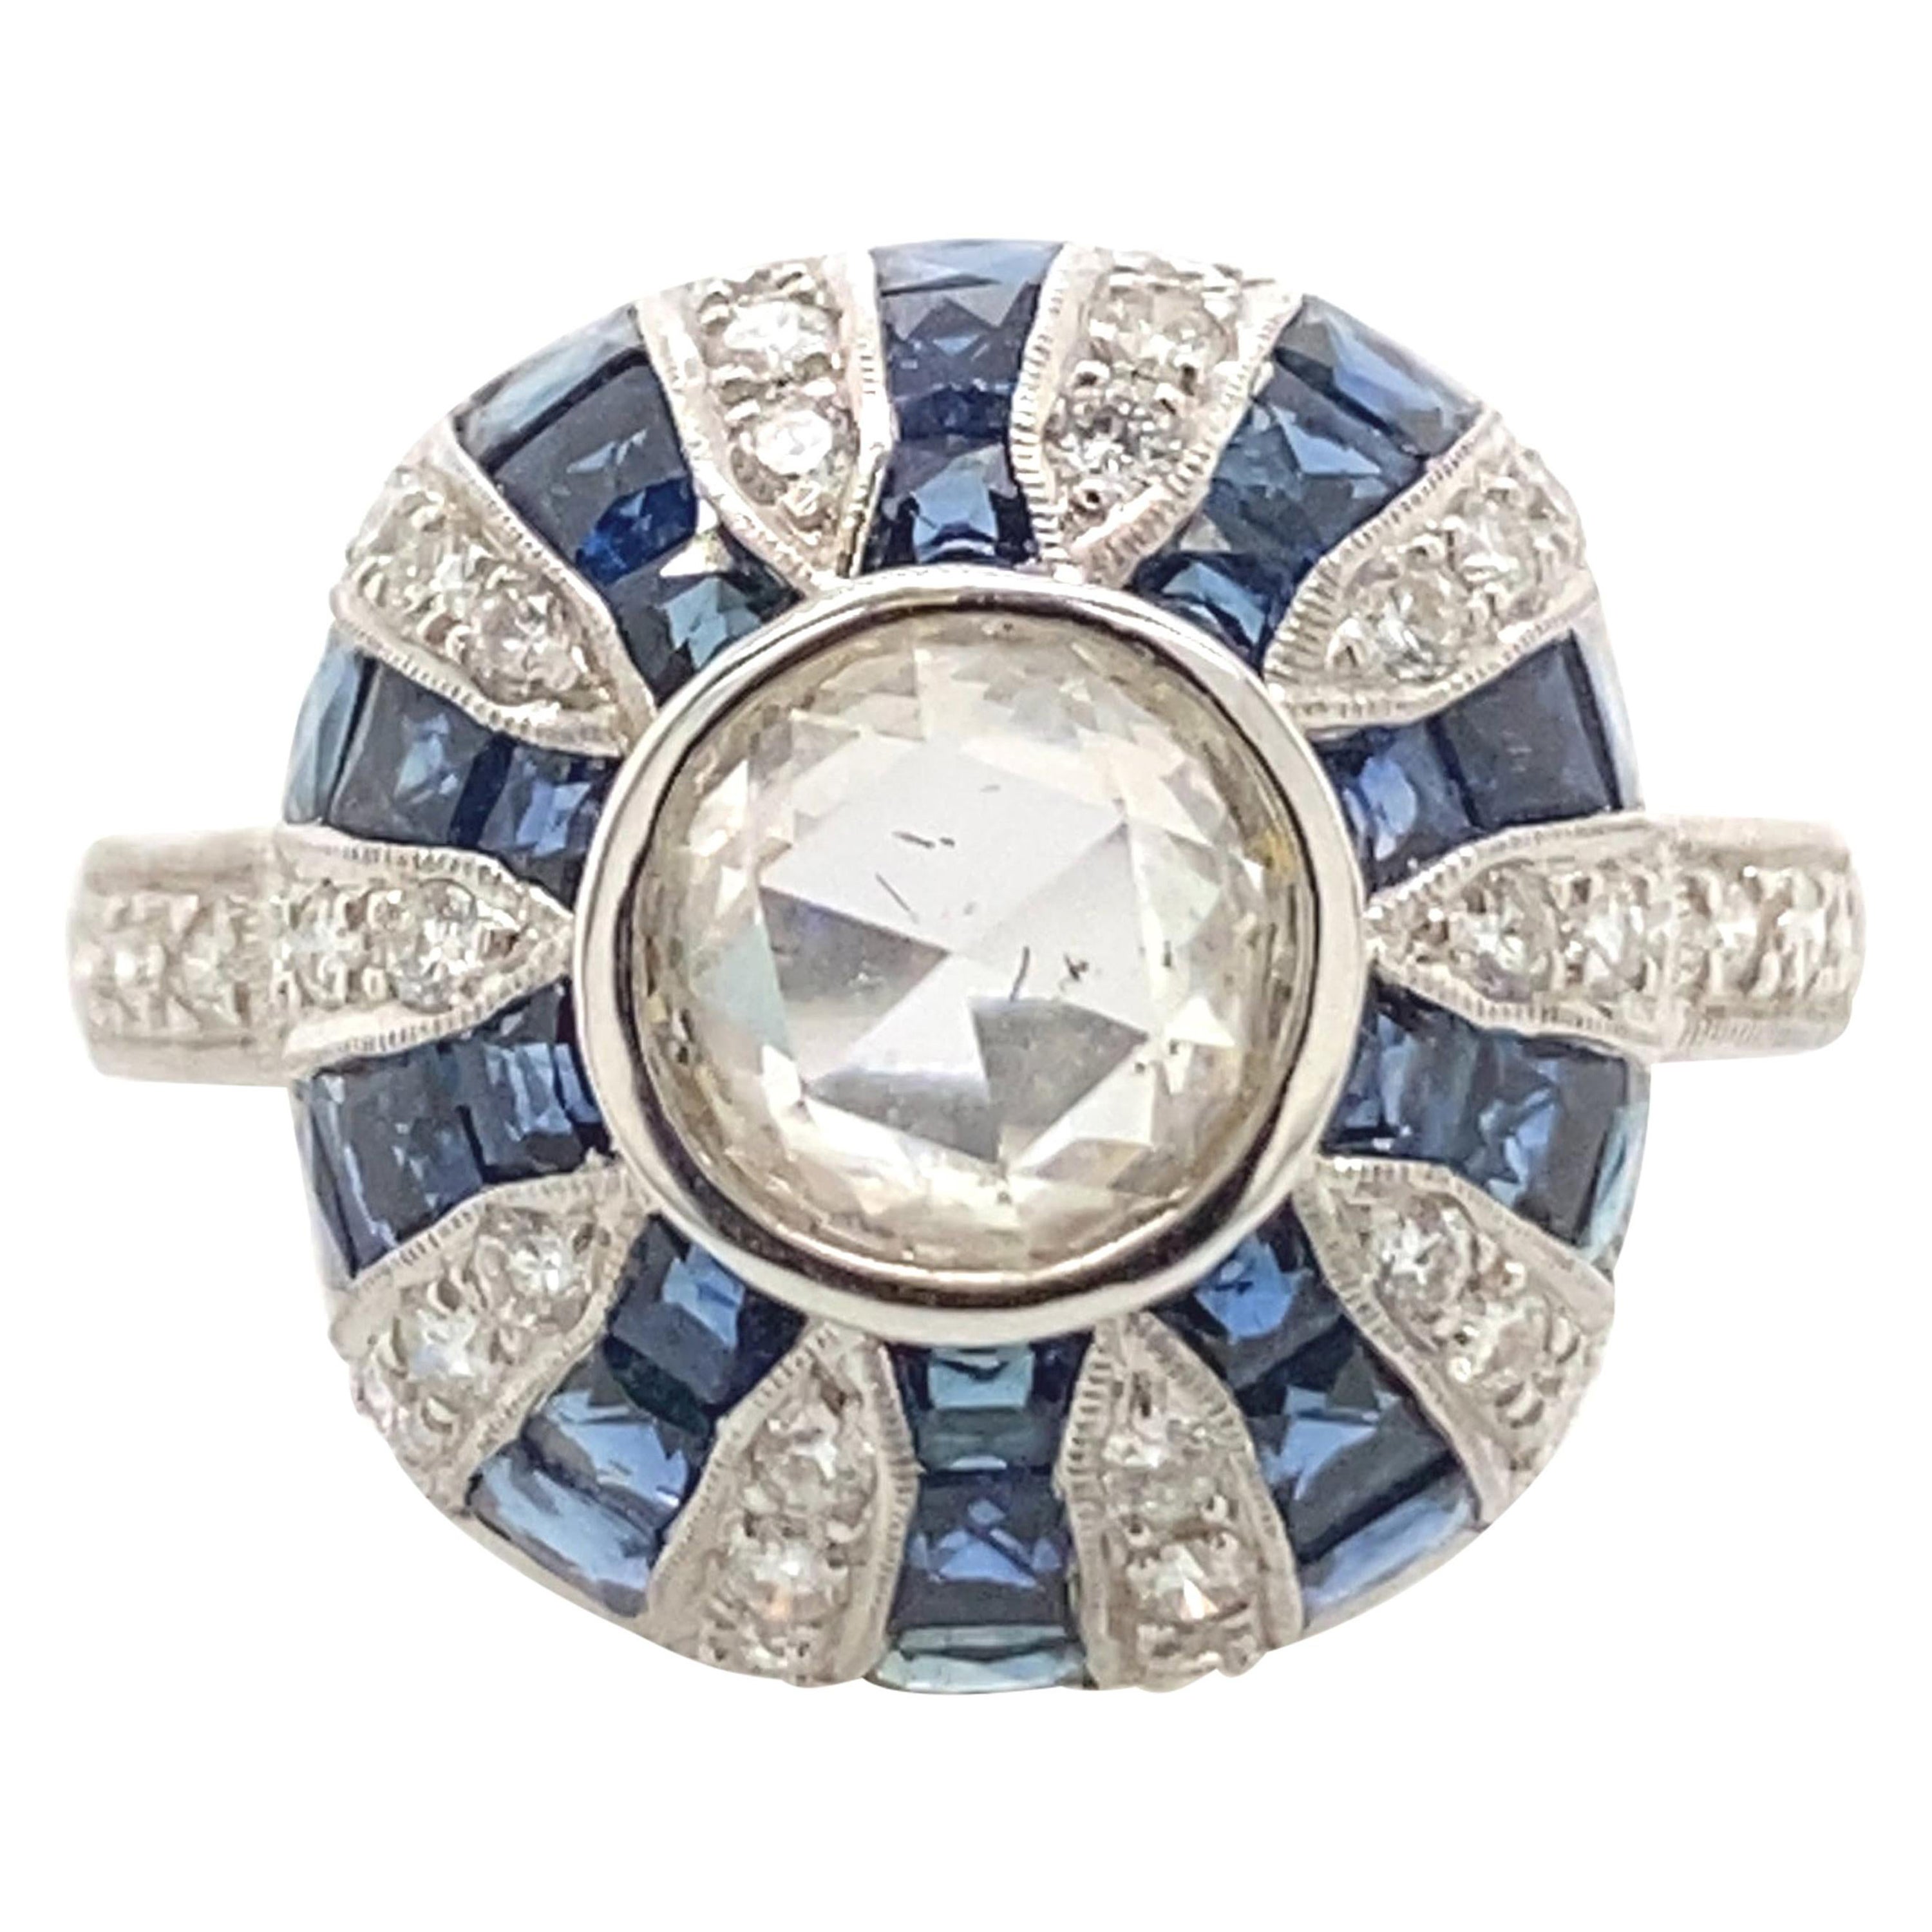 Art Deco Inspired Diamond & Sapphire Ring 18k White Gold